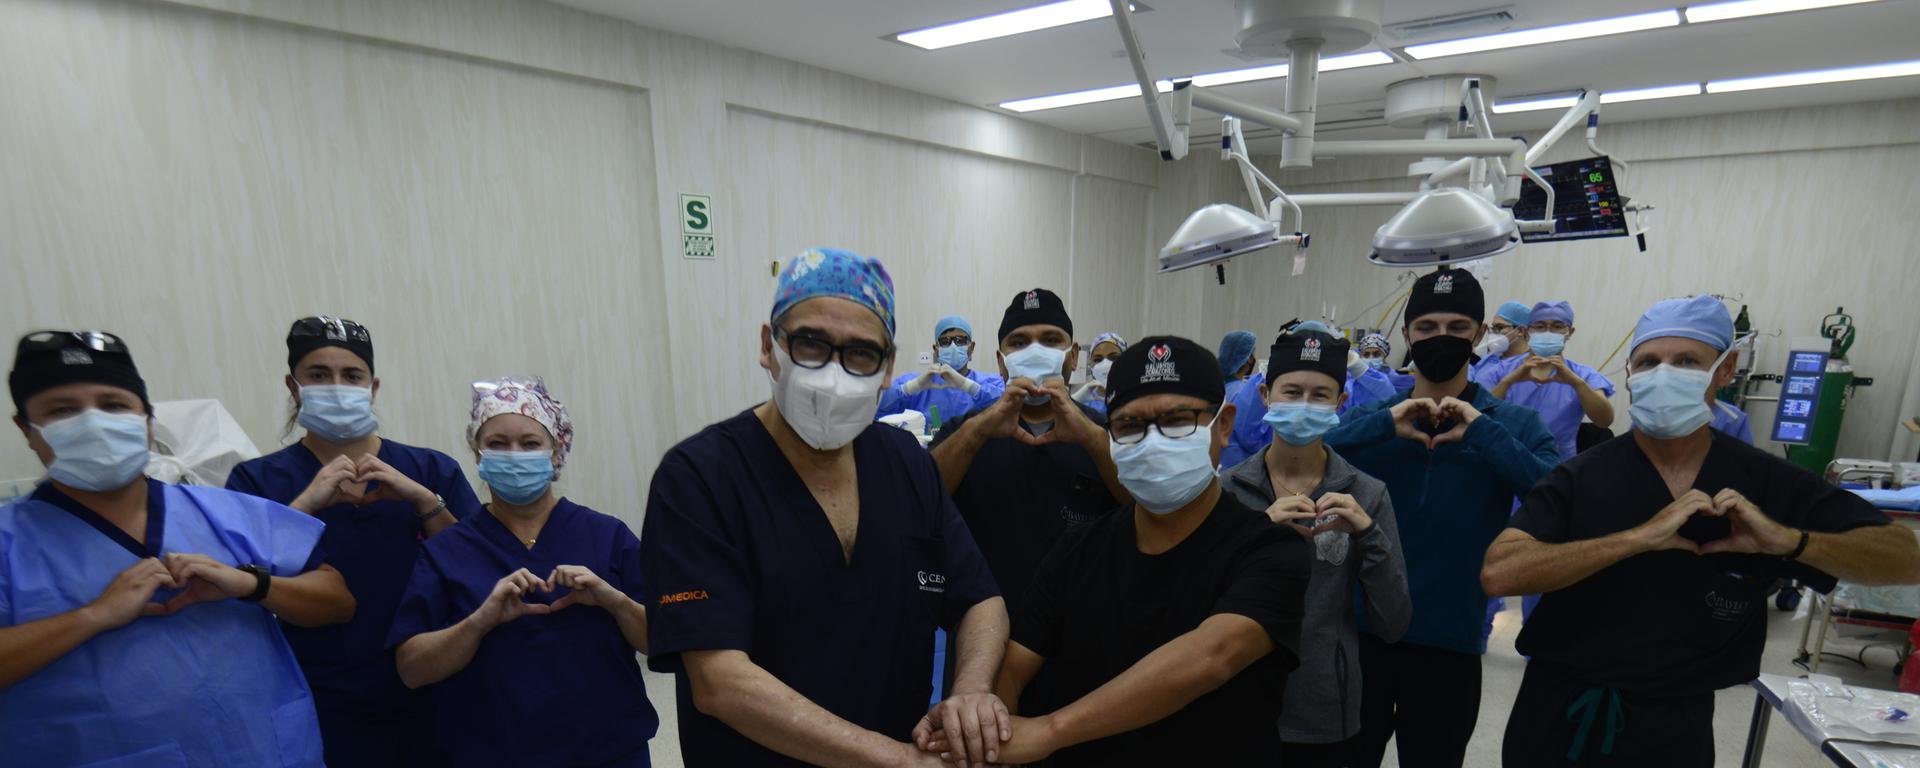 La noble misión de médicos peruanos que busca salvar a pacientes cardiacos con pocas expectativas de vida